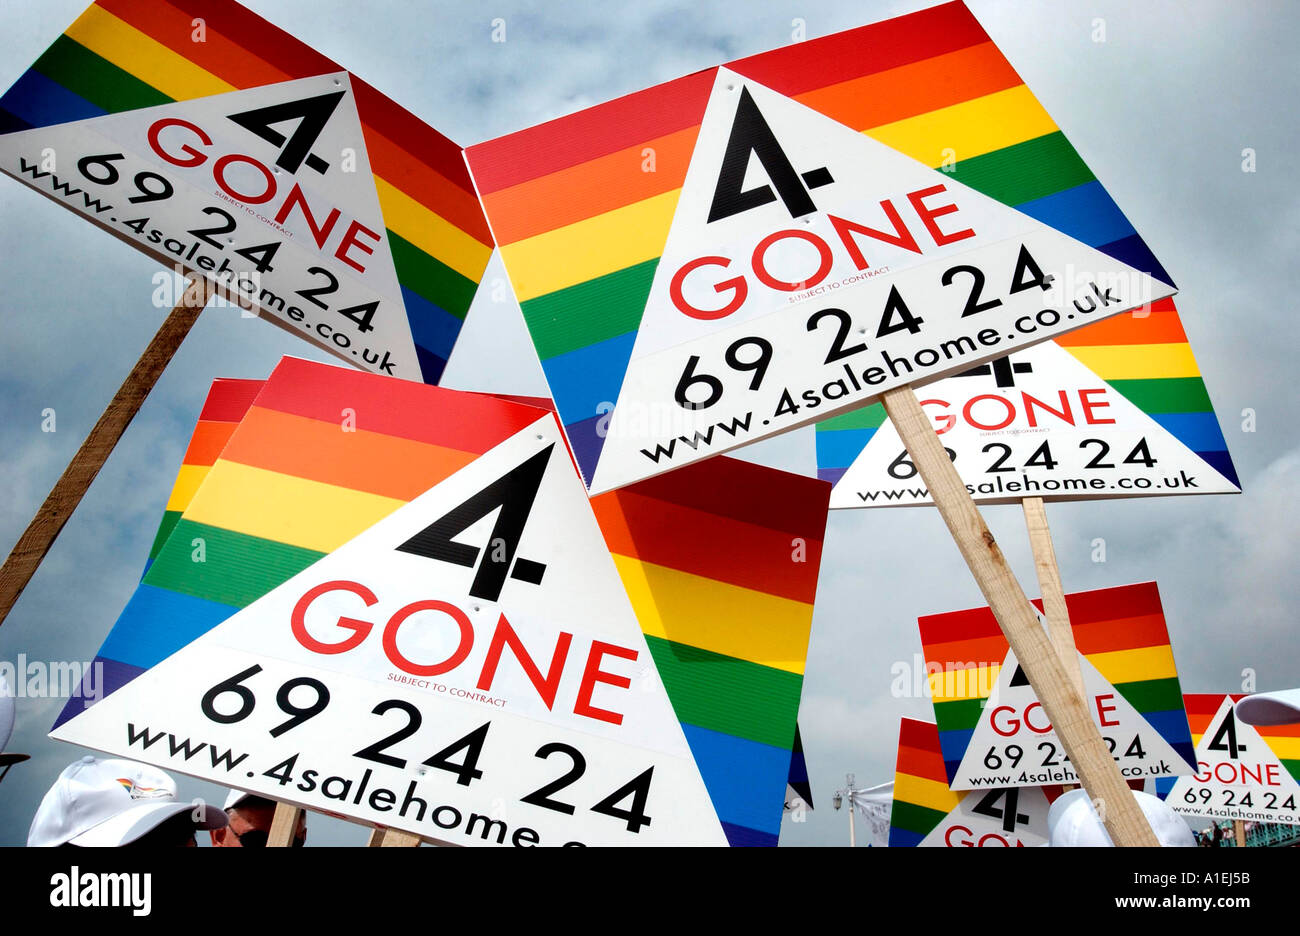 Britains primo Gay agenti immobiliari, una società con sede in Brighton, mostrano i loro colori sulle loro striped 'sold' cartelli stradali Foto Stock